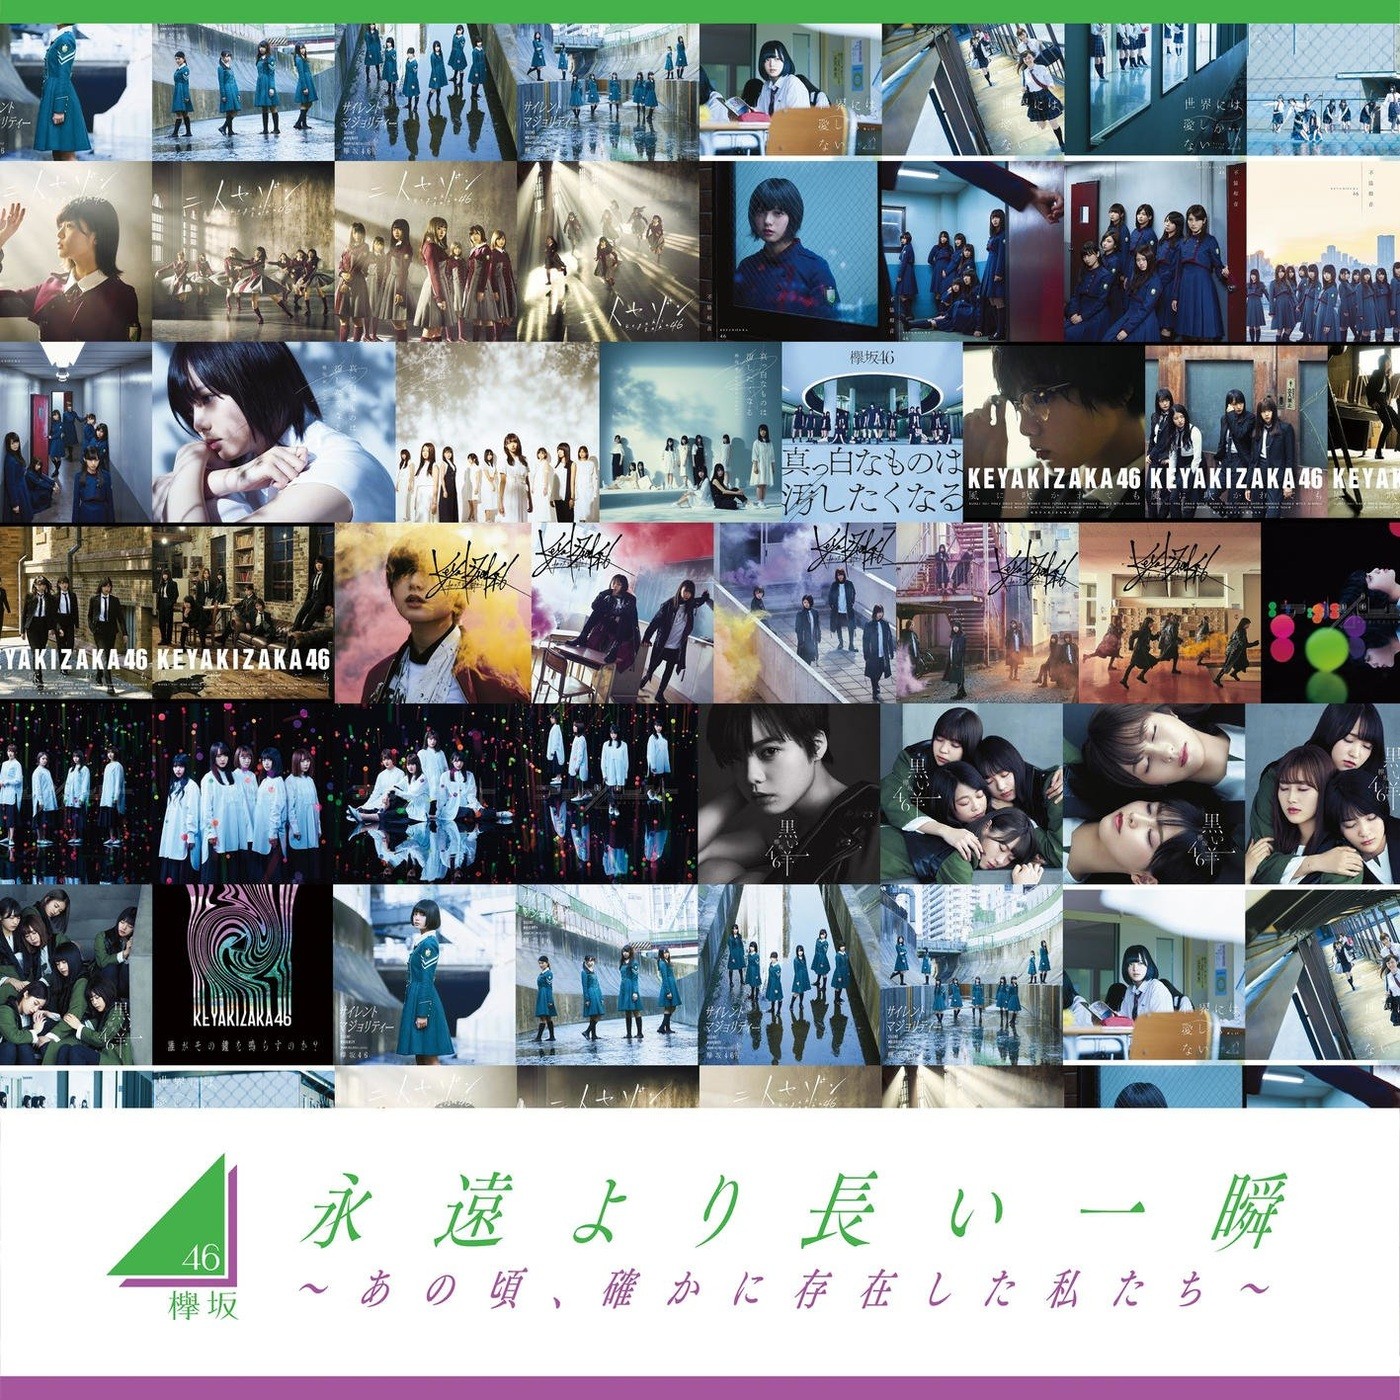 欅坂46 (Keyakizaka46) - 永遠より長い一瞬 ～あの頃、確かに存在した私たち～ (2020) [FLAC + MP3 320 + Blu-ray ISO]